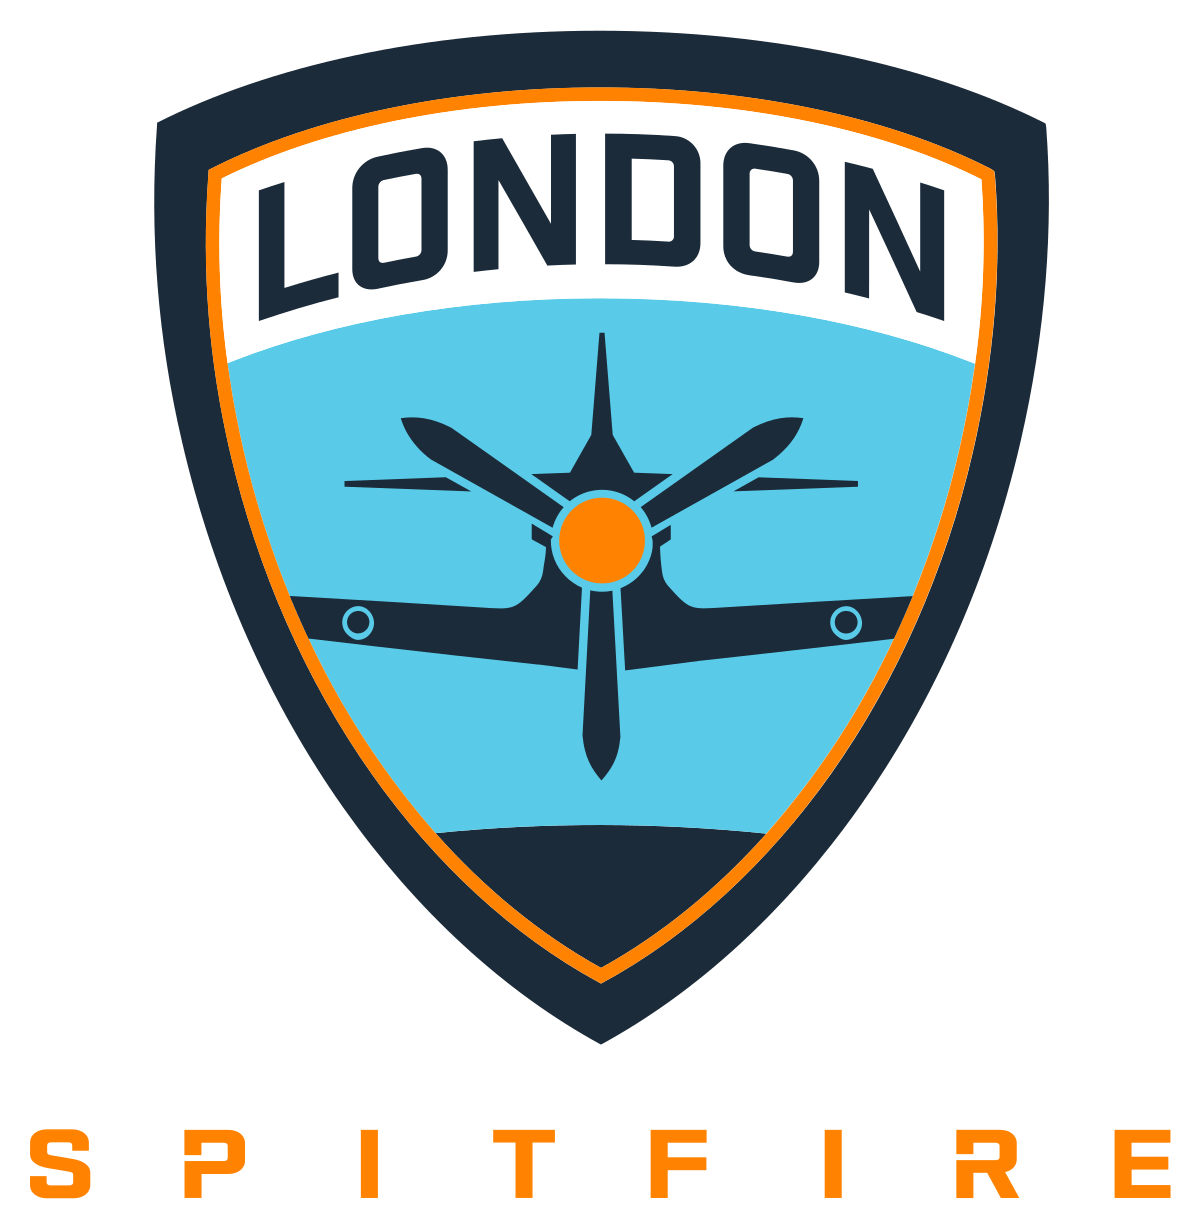 London Spitfire Logo - London Spitfire